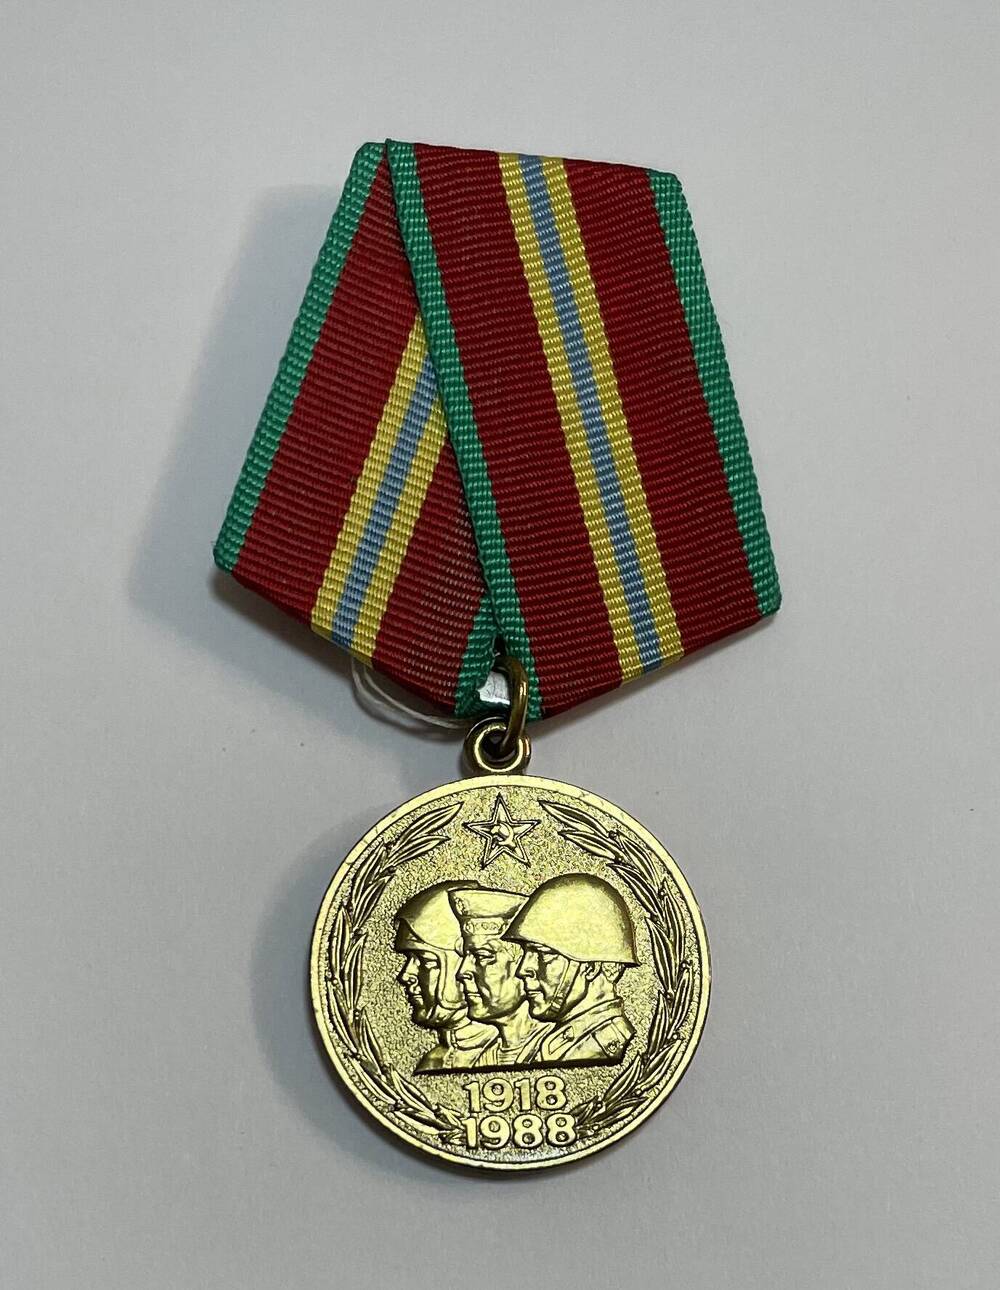 Медаль юбилейная медаль «70 лет Вооружённых Сил СССР», принадлежавшая Инспекторову Роману Ивановичу. В соответствии с Указом ПРЕЗИДИУМА ВЕРХОВНОГО СОВЕТА СССР от 28 января 1988 года награжден юбилейной медалью  «70 лет Вооружённых Сил СССР» .